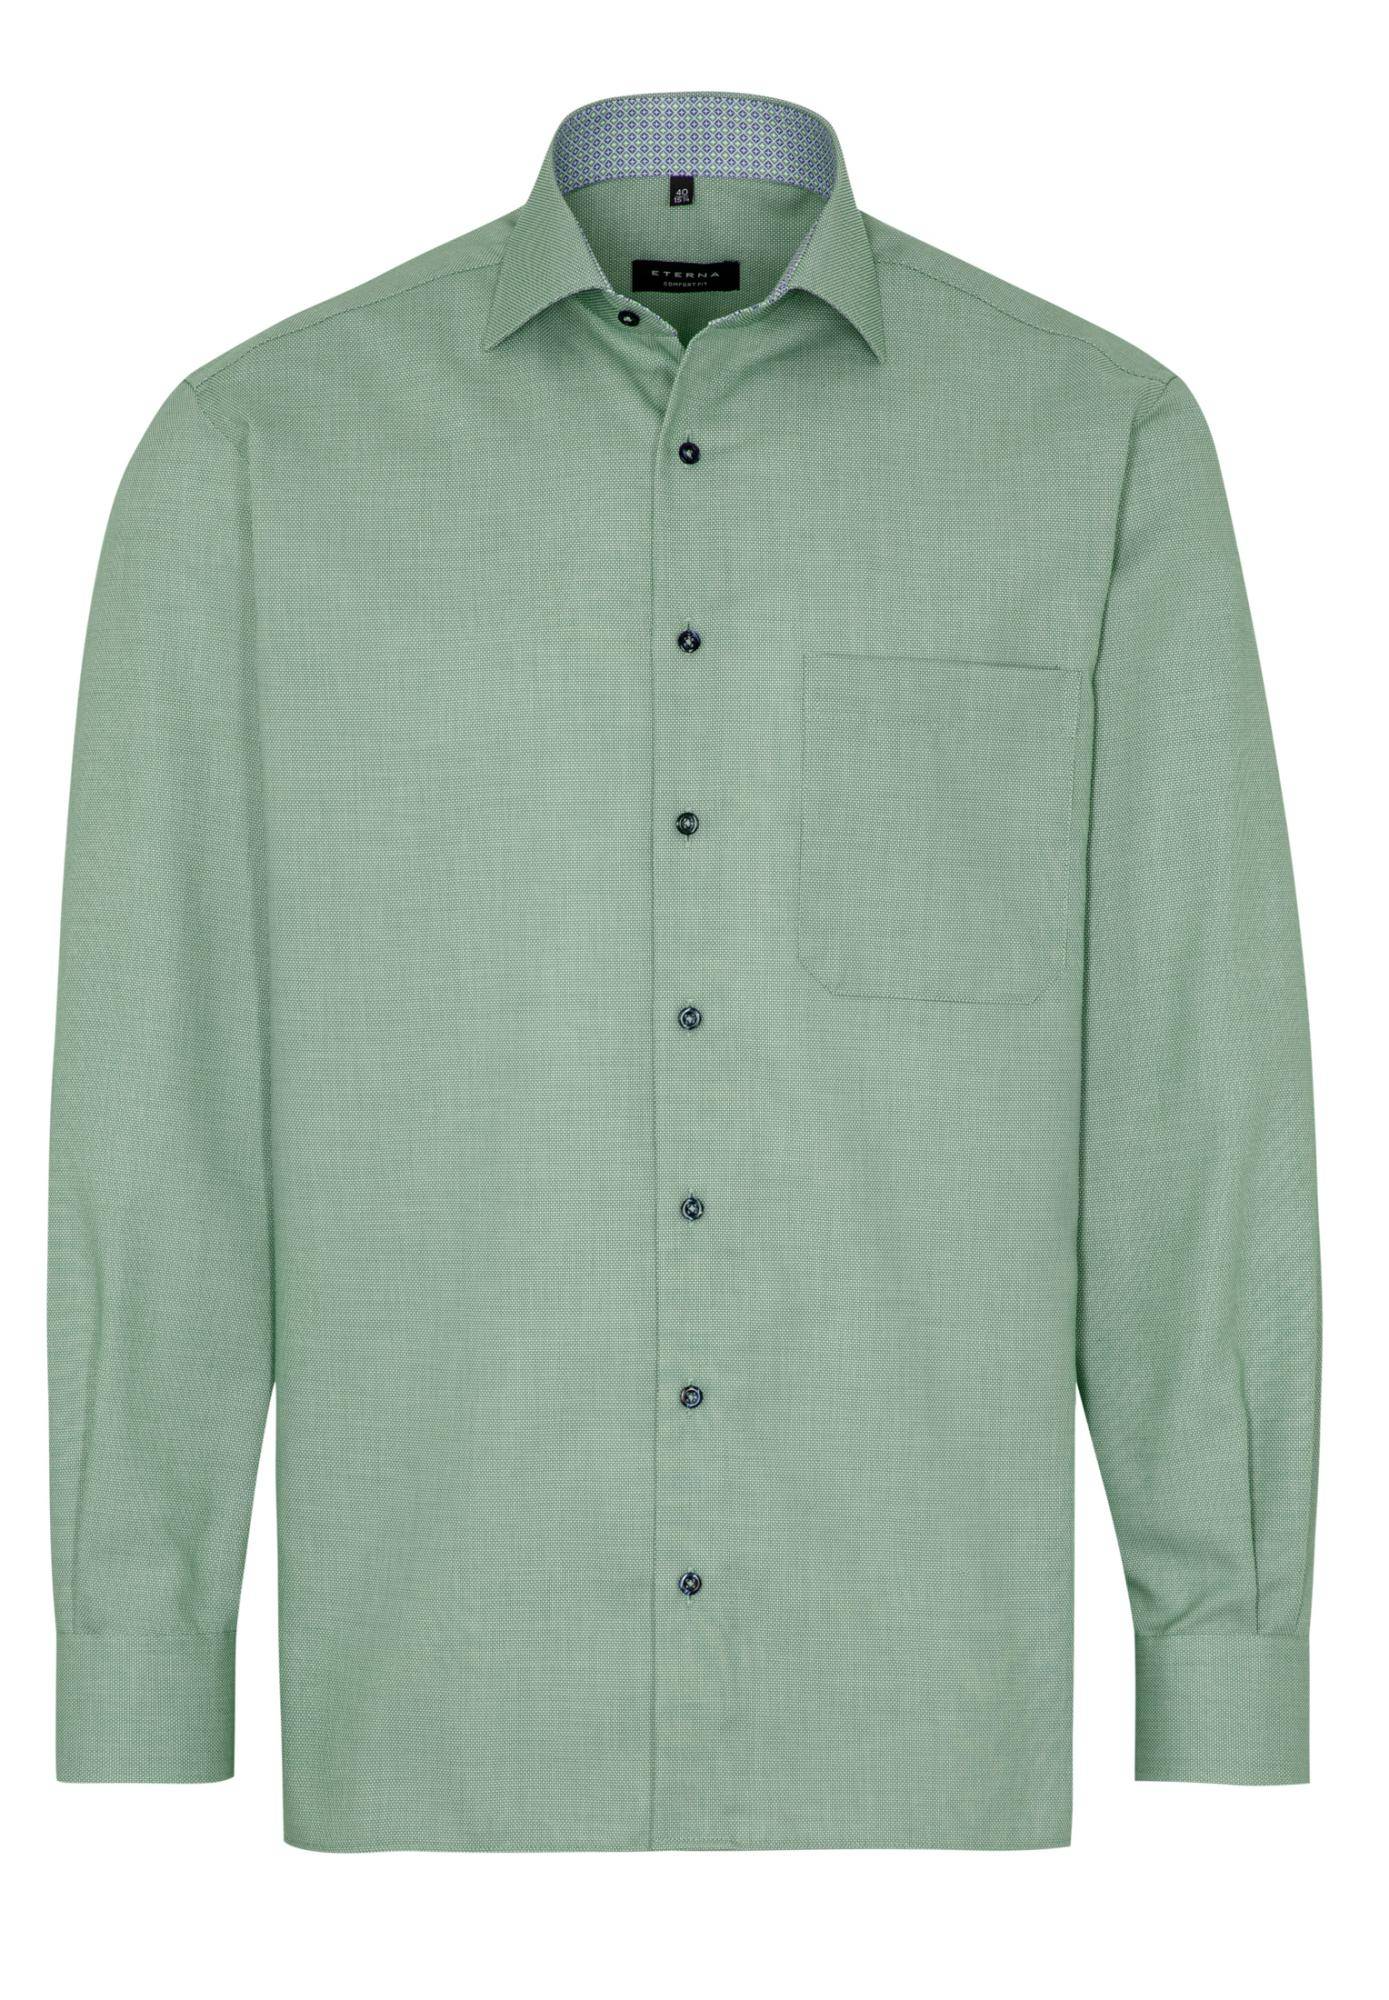 Мужская рубашка ETERNA, зеленая, цвет зеленый, размер 48 - фото 6